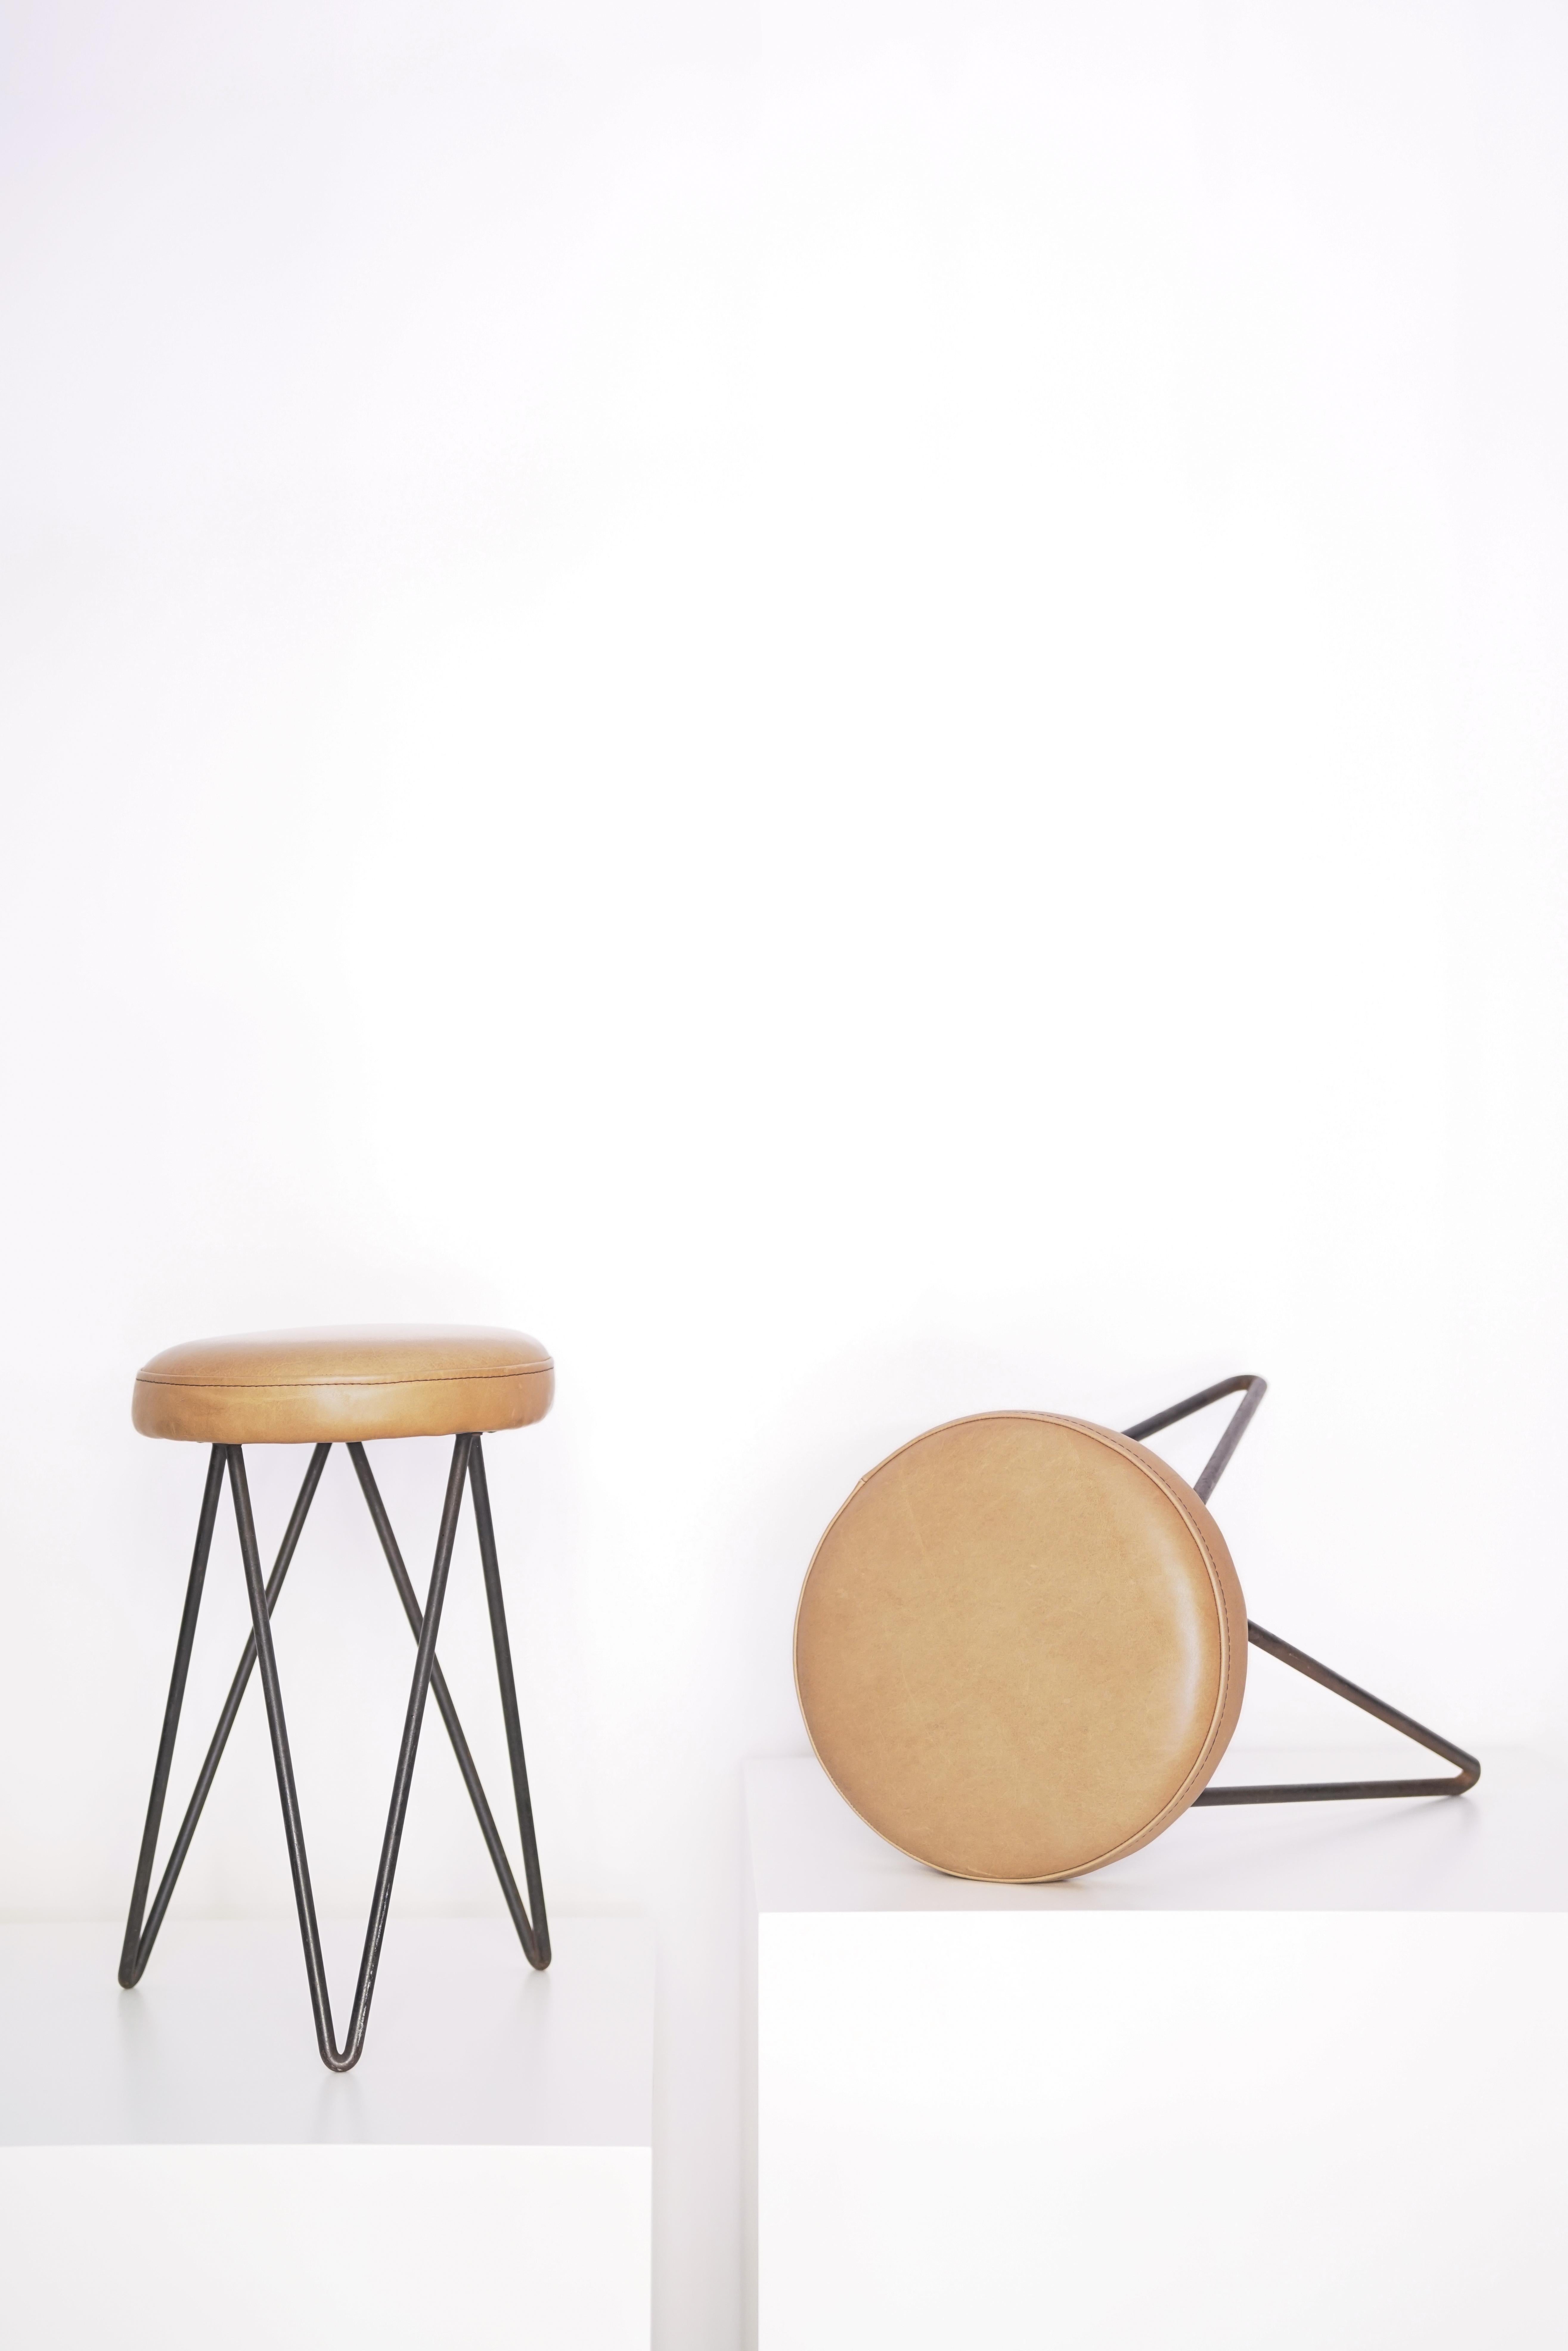 Paar französische Lederhocker, 1960er Jahre, entworfen von Pierre Guariche.

Über den Designer:
Als visionärer Designer hat er den Möbeln eine funktionale Dimension verliehen, ohne jemals den ästhetischen Ansatz zu vergessen. Er wollte auf die